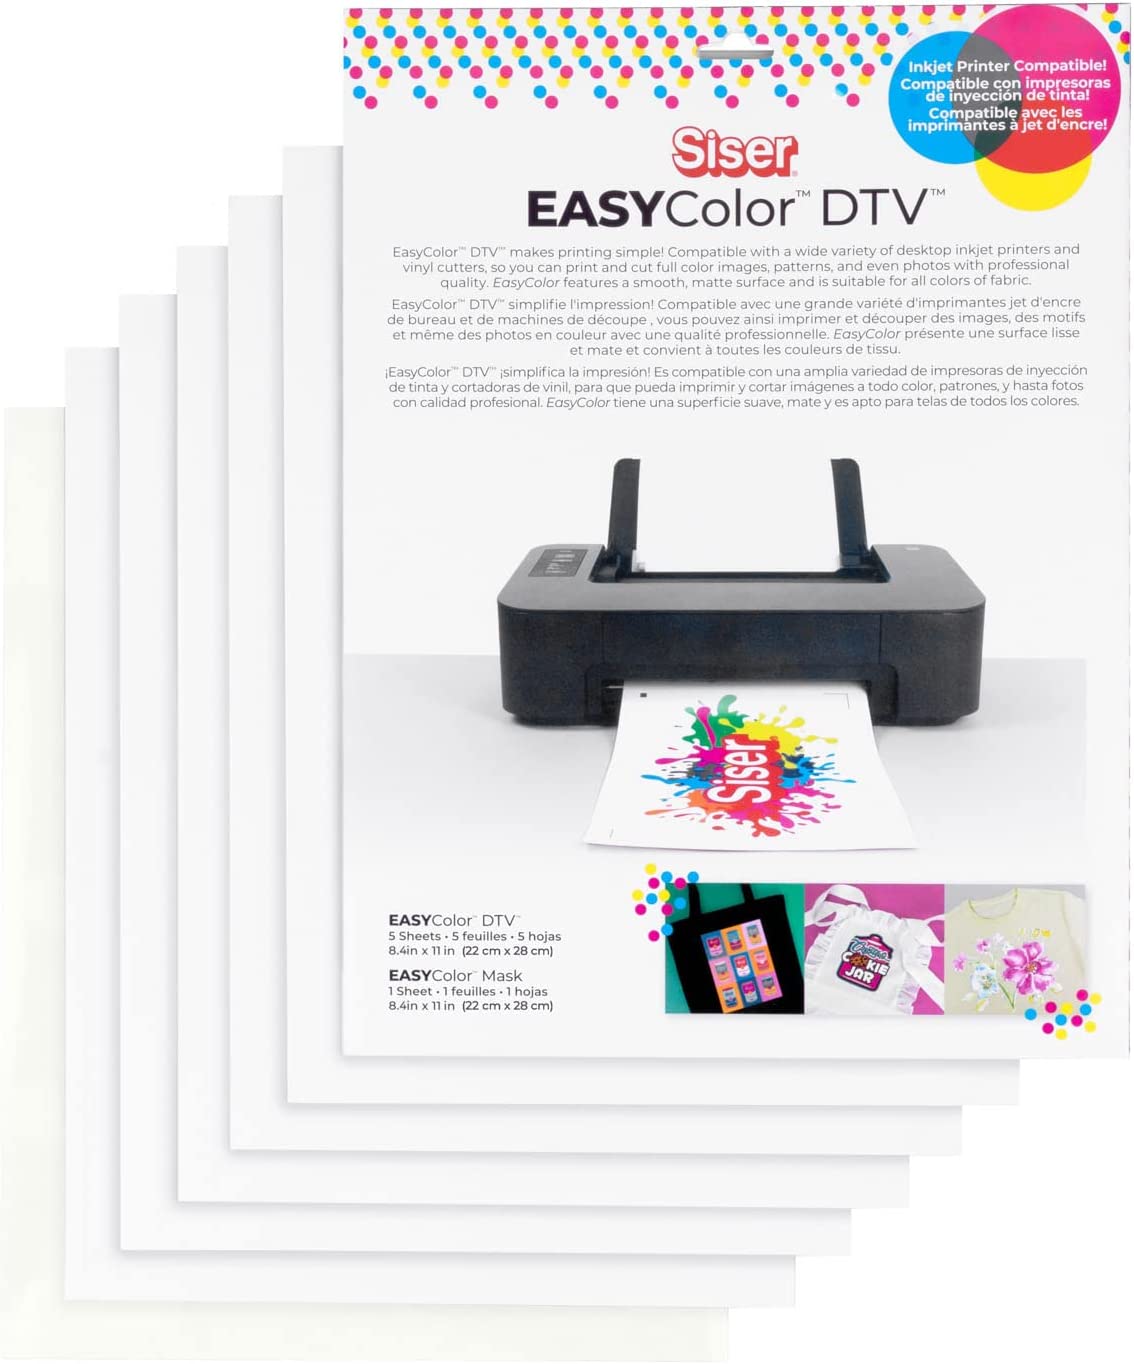 Siser EasyColor DTV + Mask Combo Pack